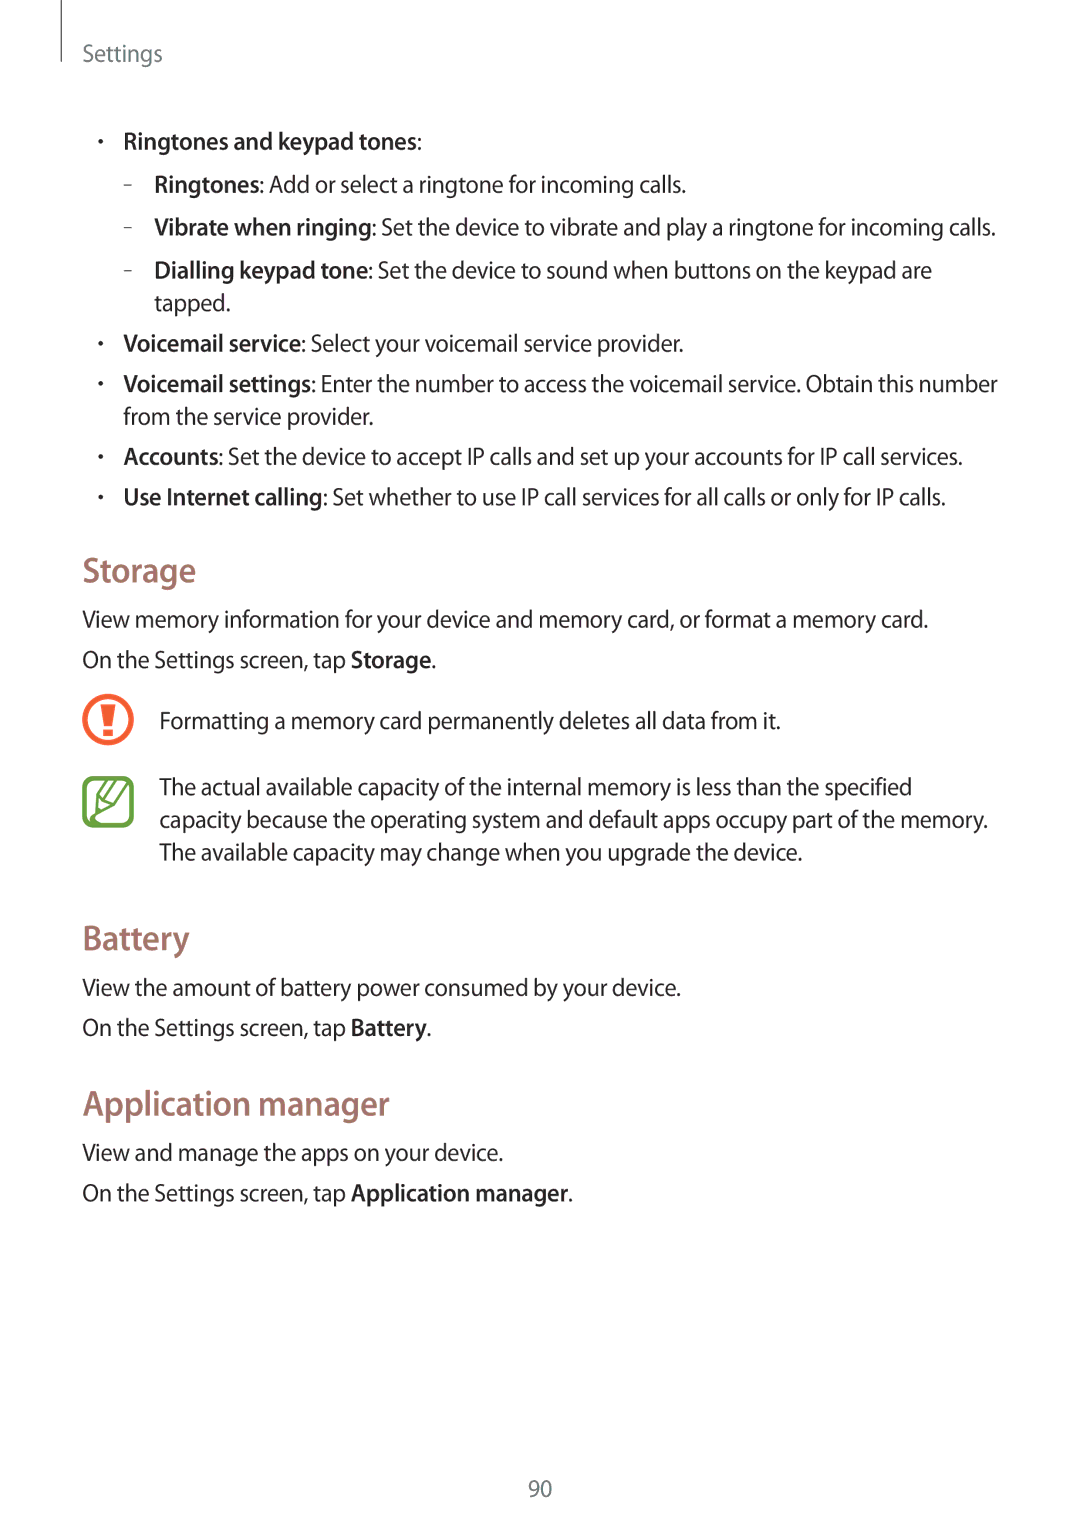 Samsung SM-G110HZKAXXV, SM-G110HZWAXXV manual Storage, Battery, Application manager, Ringtones and keypad tones 